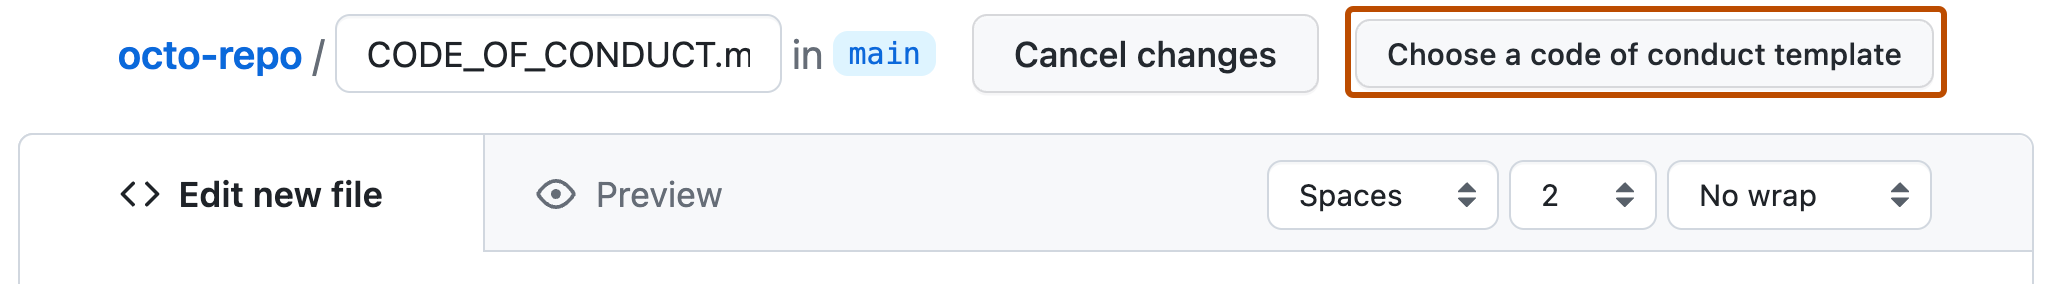 Captura de tela de um repositório GitHub que mostra um arquivo markdown sendo criado. Um botão à direita, rotulado "Escolher um modelo de código de conduta", está realçado em laranja escuro.